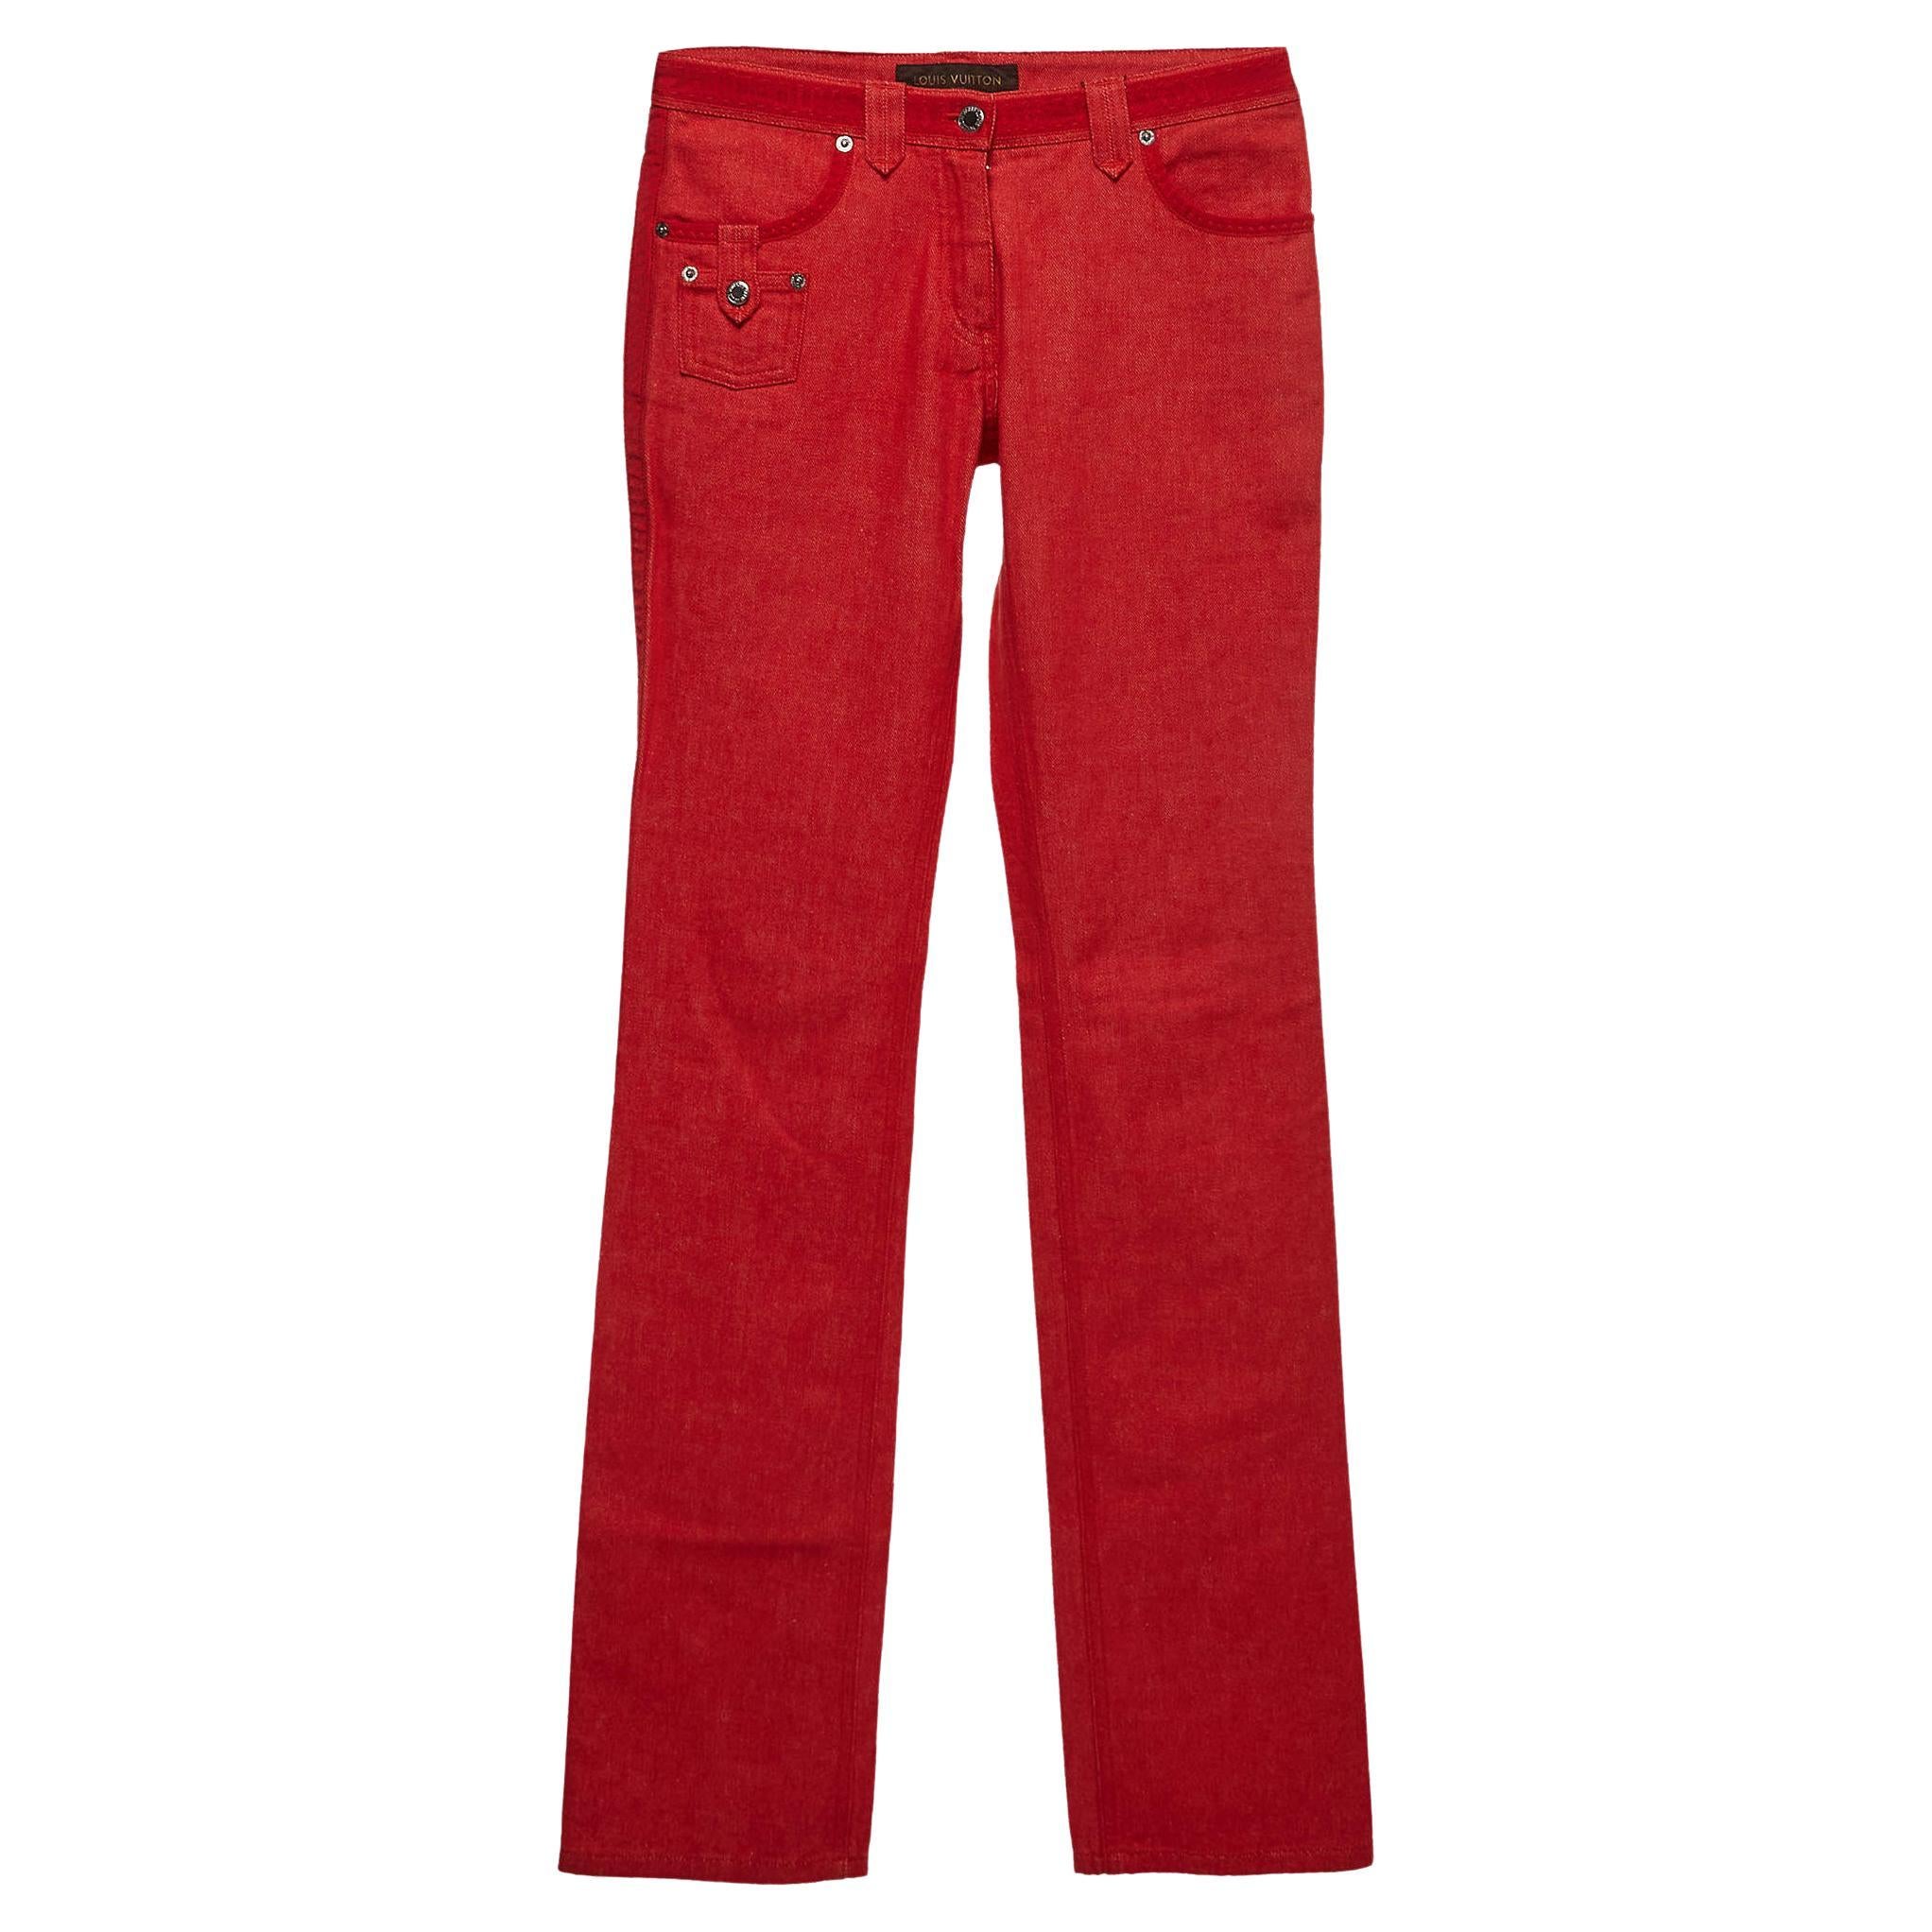 Louis Vuitton Red Denim Jeans S Waist 30"